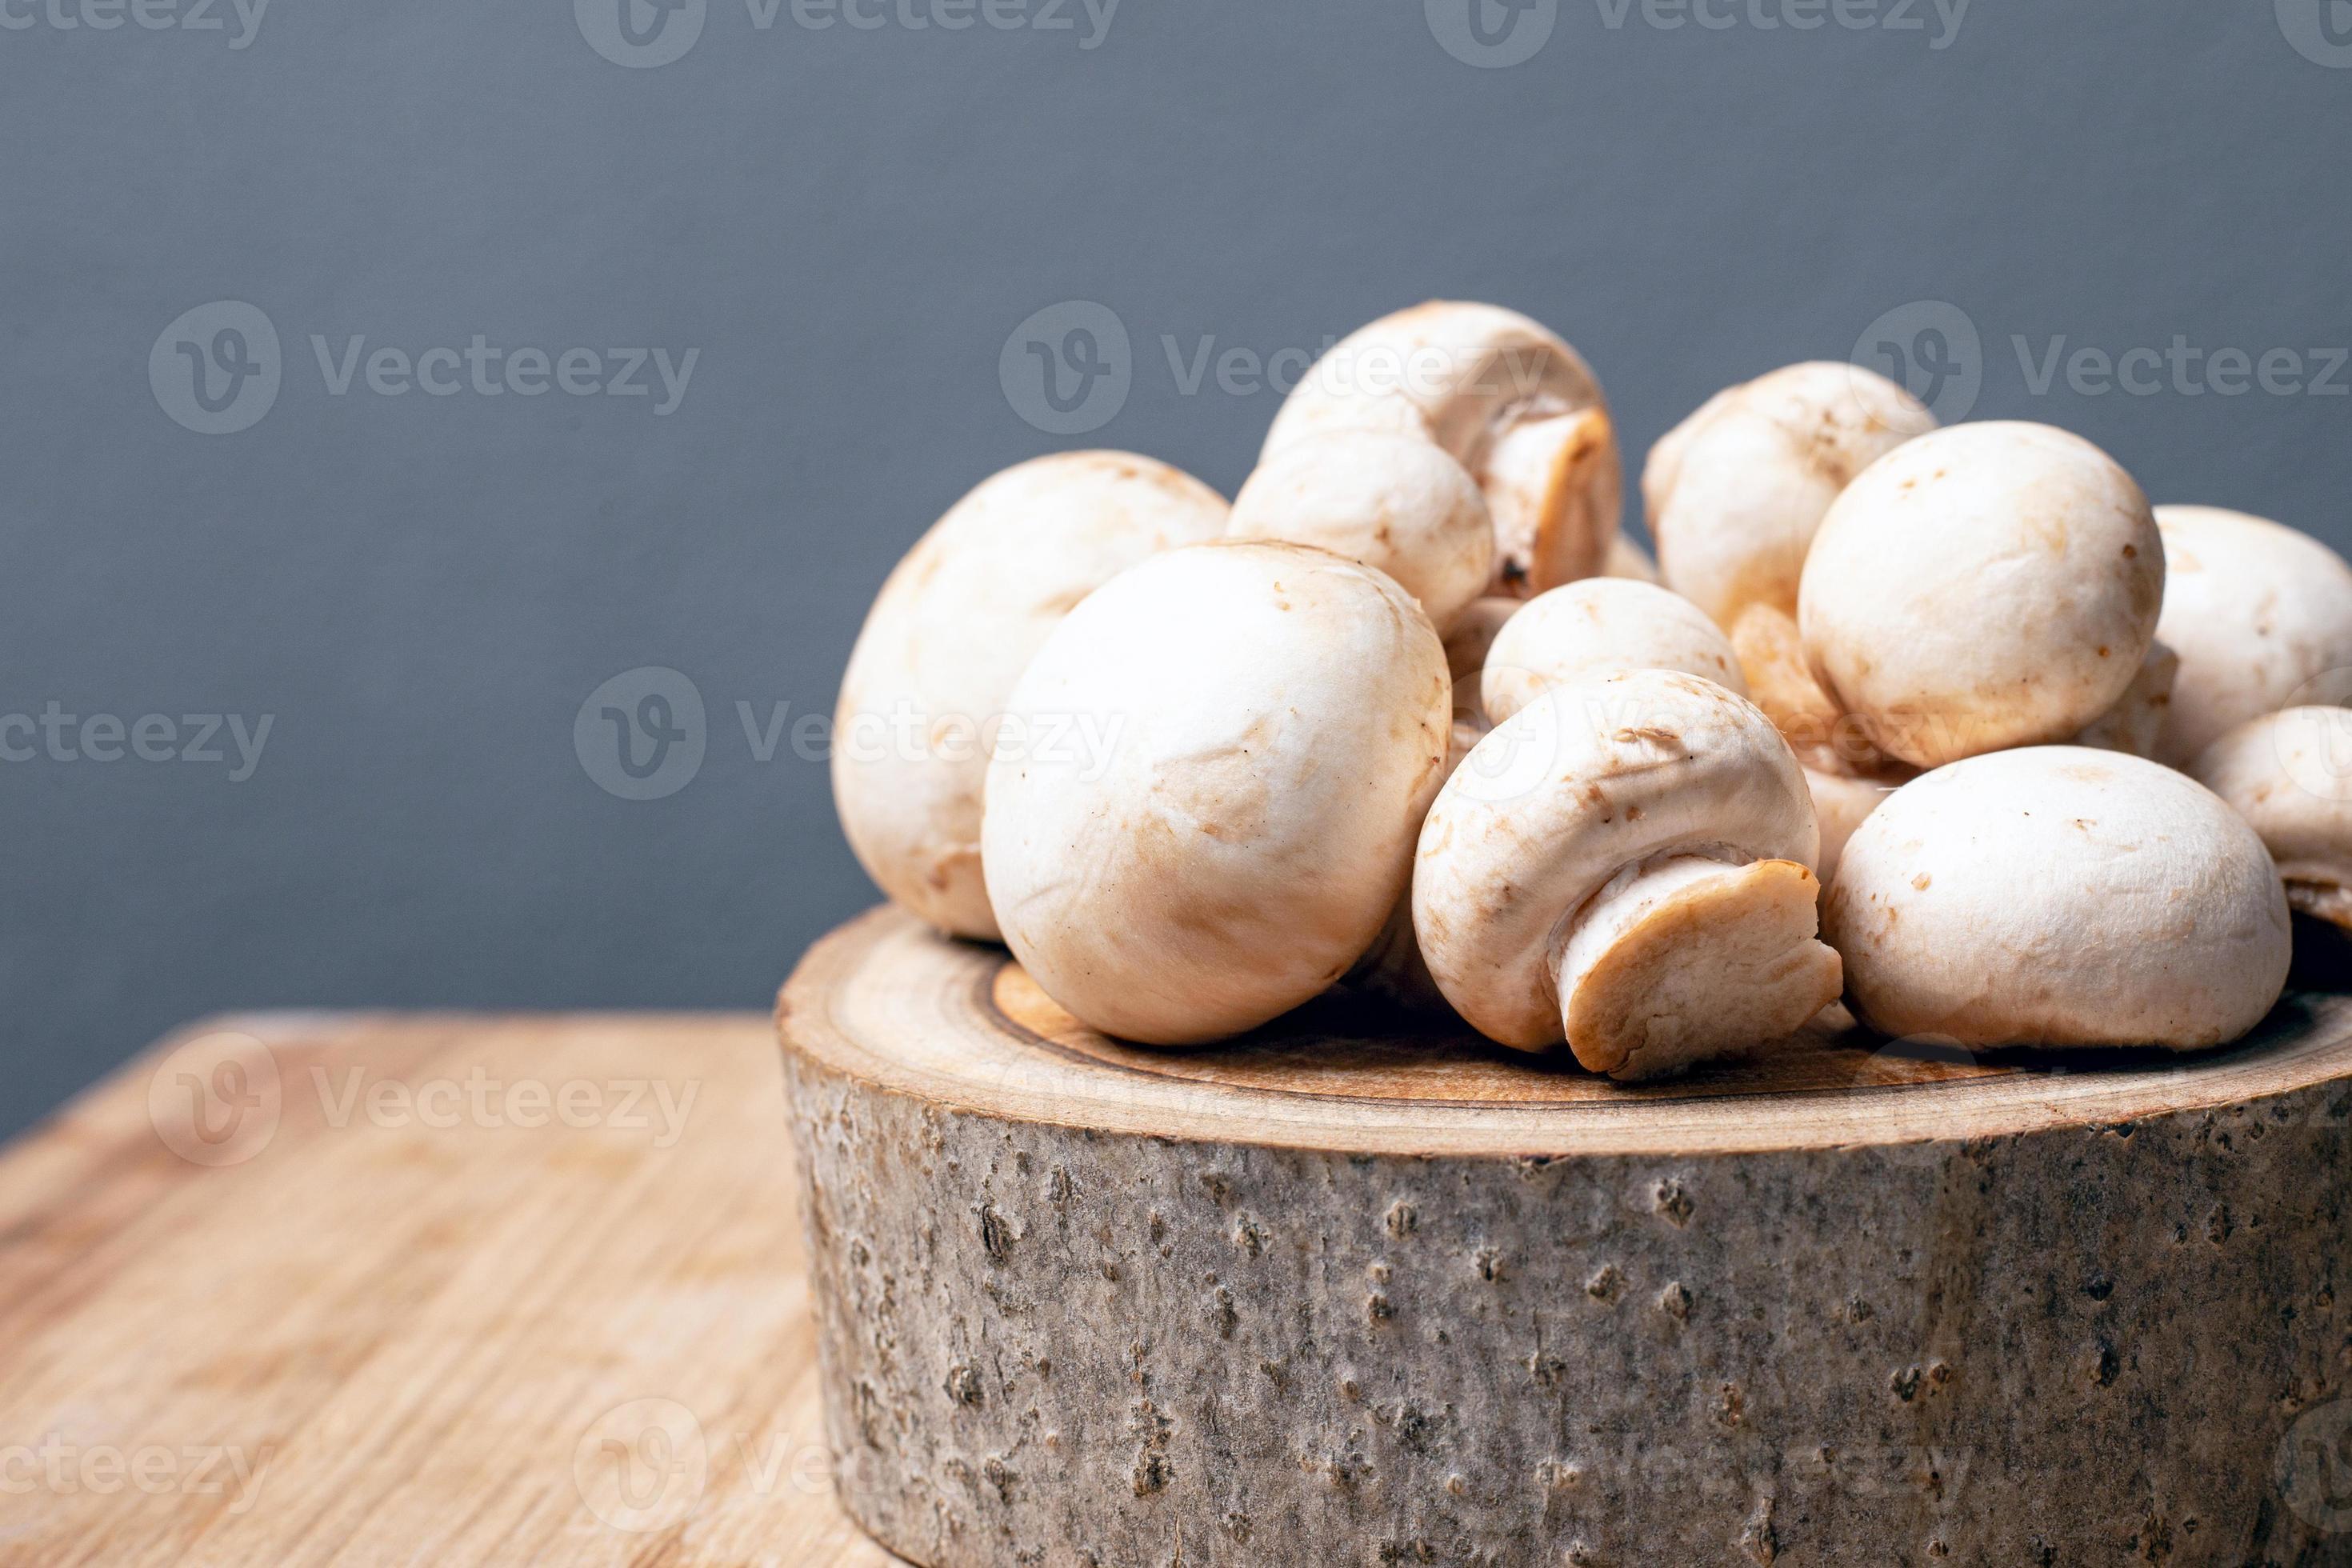 https://static.vecteezy.com/ti/photos-gratuite/p2/2247811-champignons-de-serre-champignon-frais-sur-un-stand-rustique-sur-un-fond-gris-photo.jpg